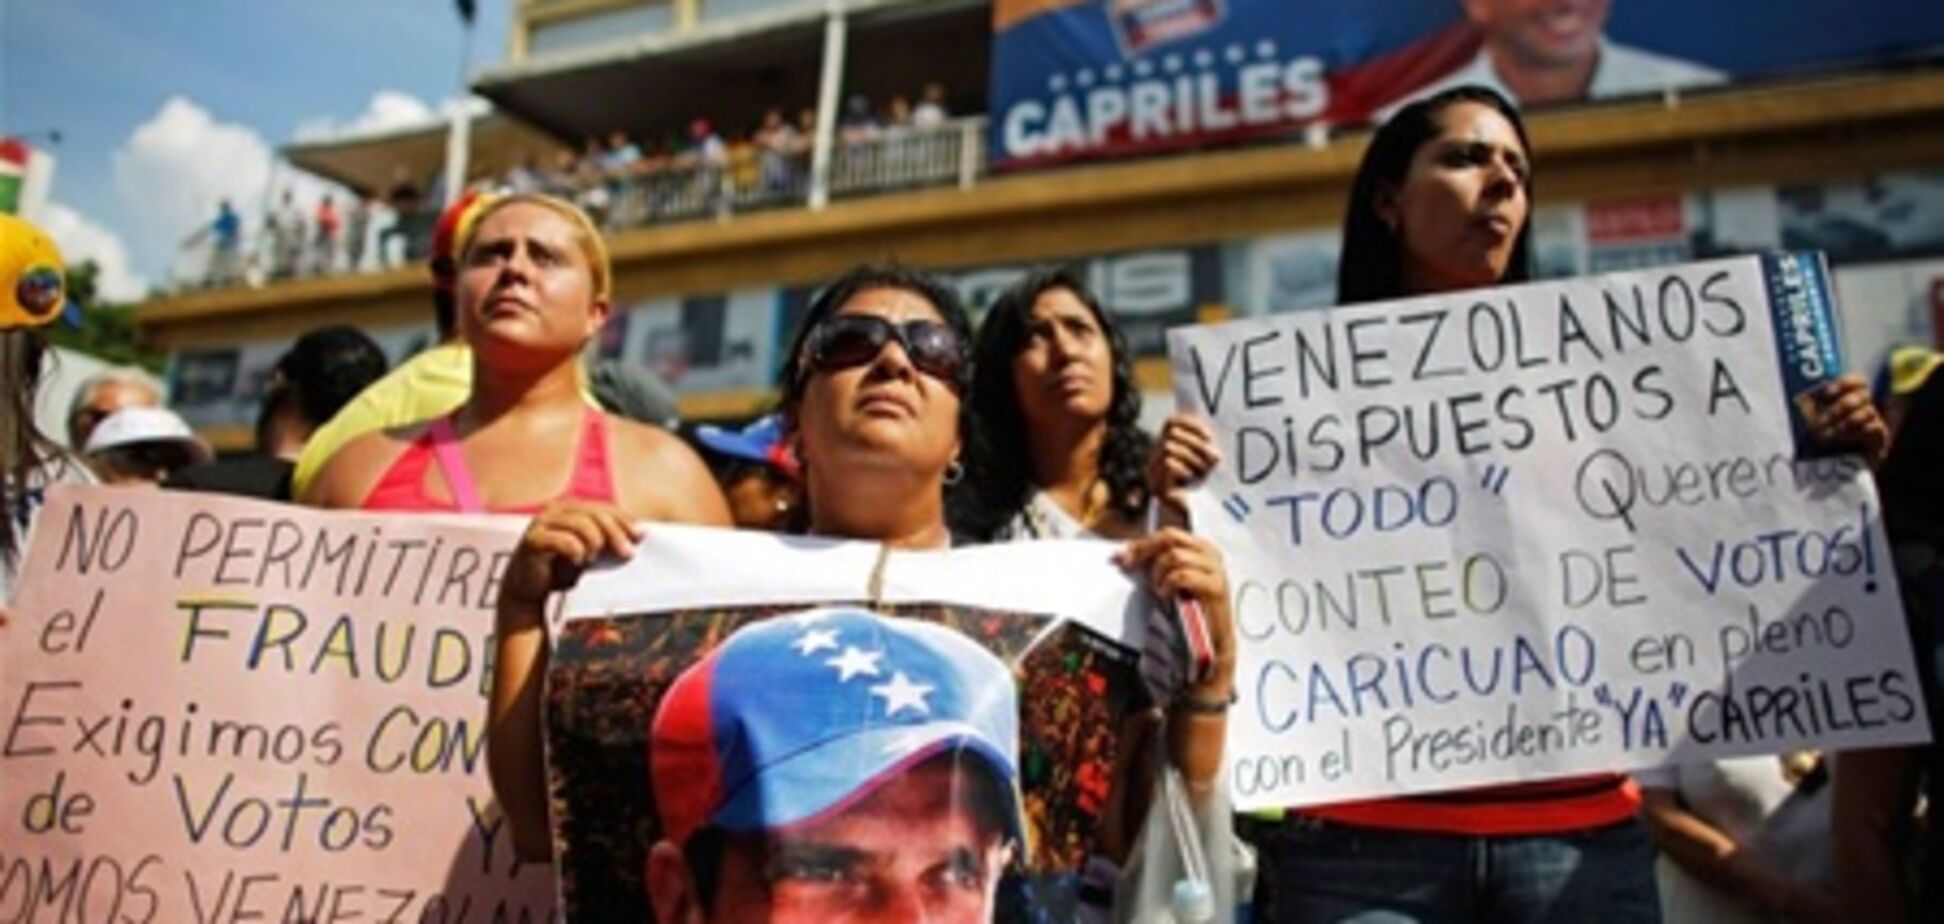 Венесуэльской оппозиции отказали в пересчете голосов